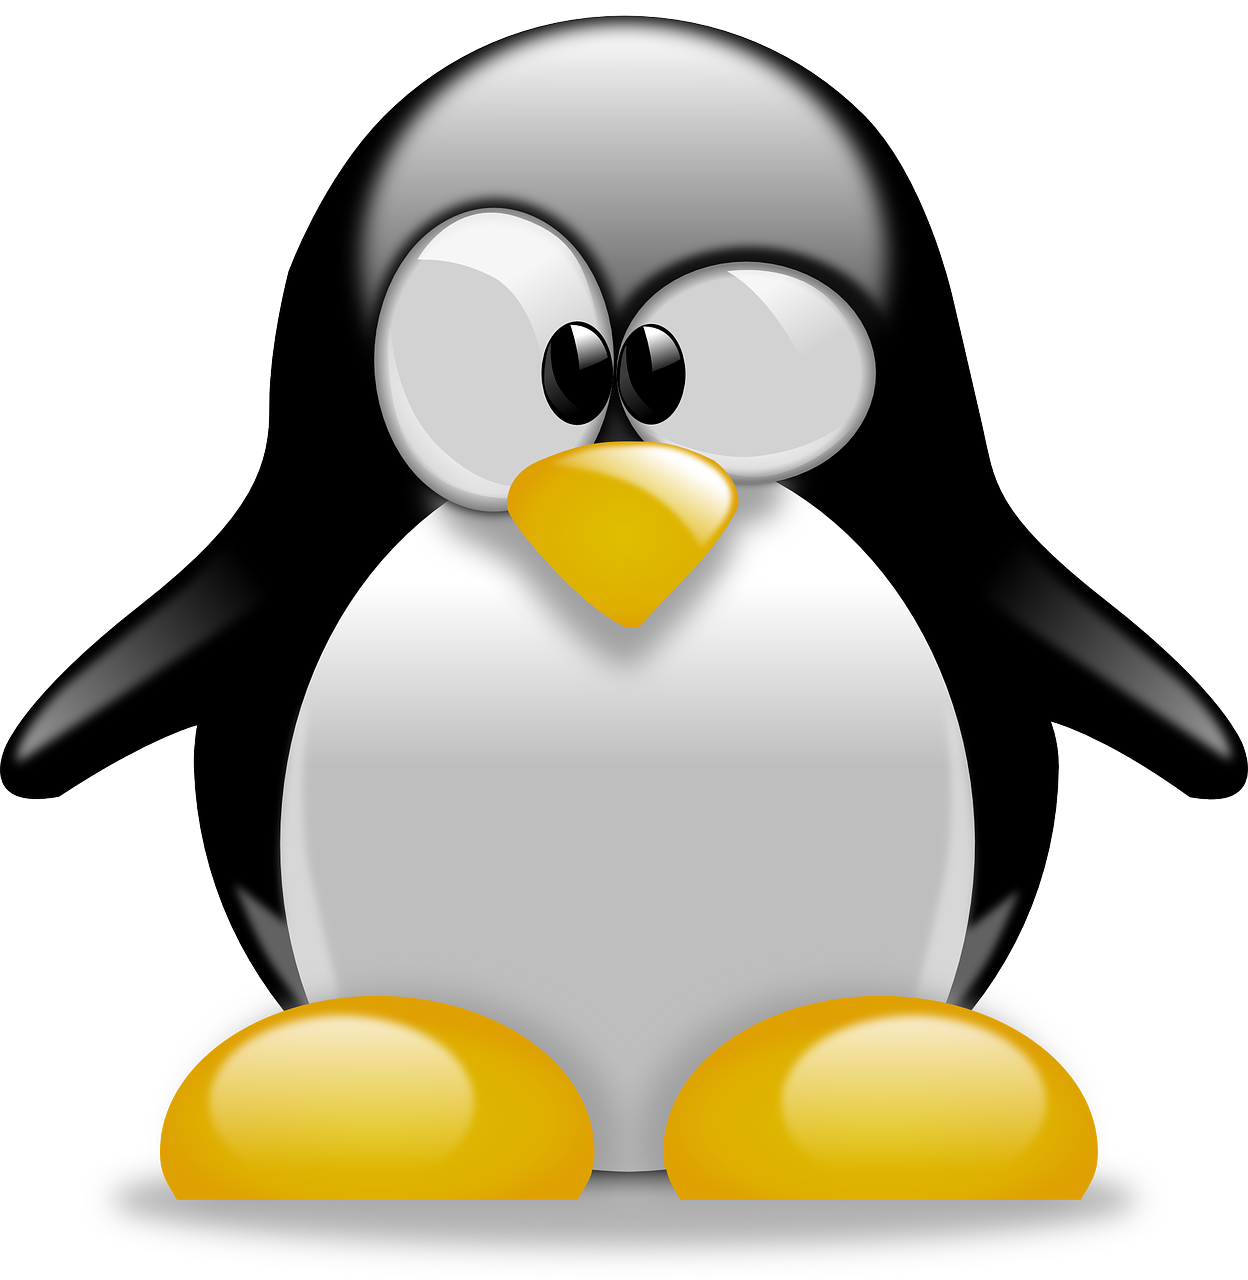 Ciclo do Linux 5.5 começa nesta semana com mudanças emocionantes